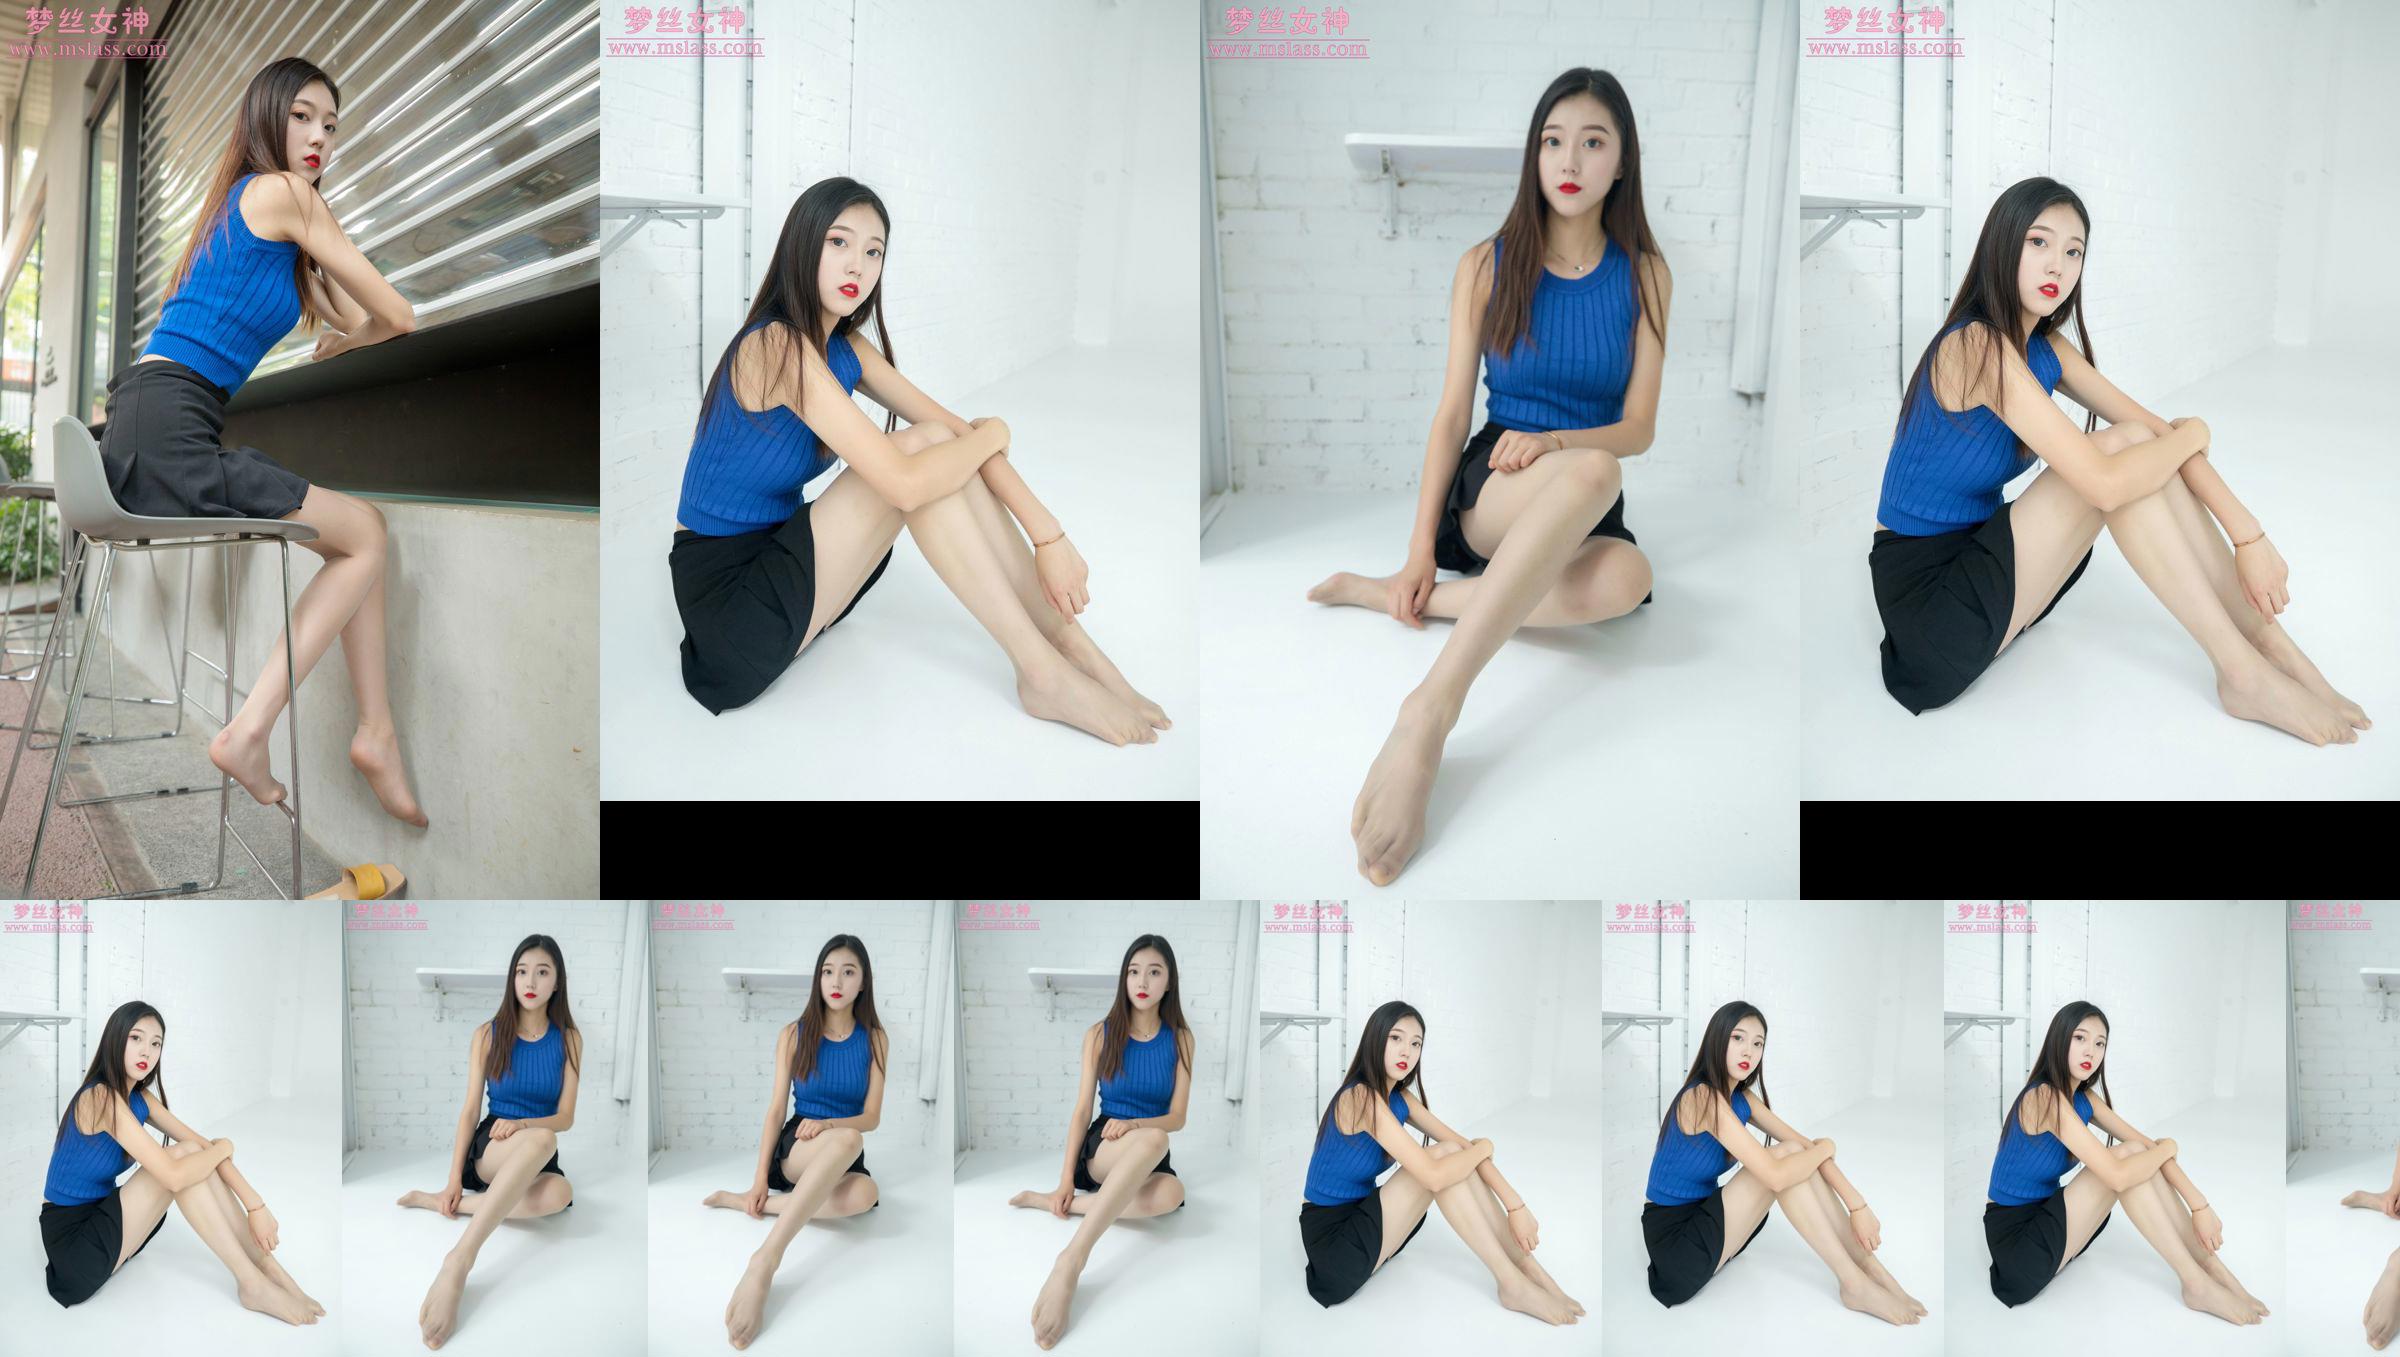 [MSLASS] Shu Lei Art Space Stockings Beautiful Legs No.c9908d Trang 1